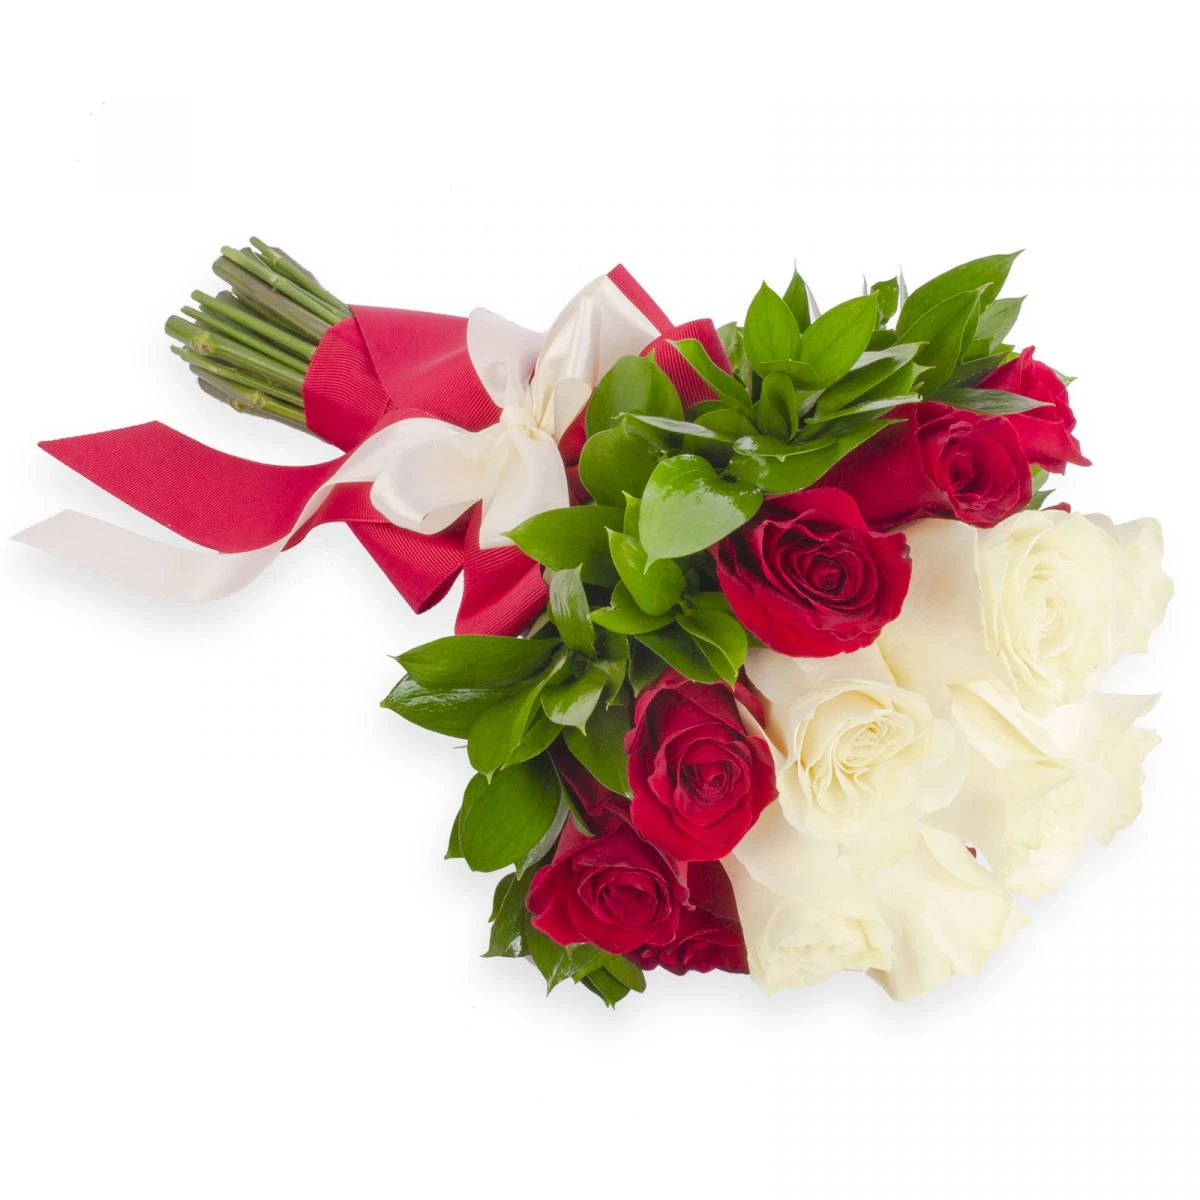 Foto principal Valentina - Ramo de novia con rosas rojas y blancas